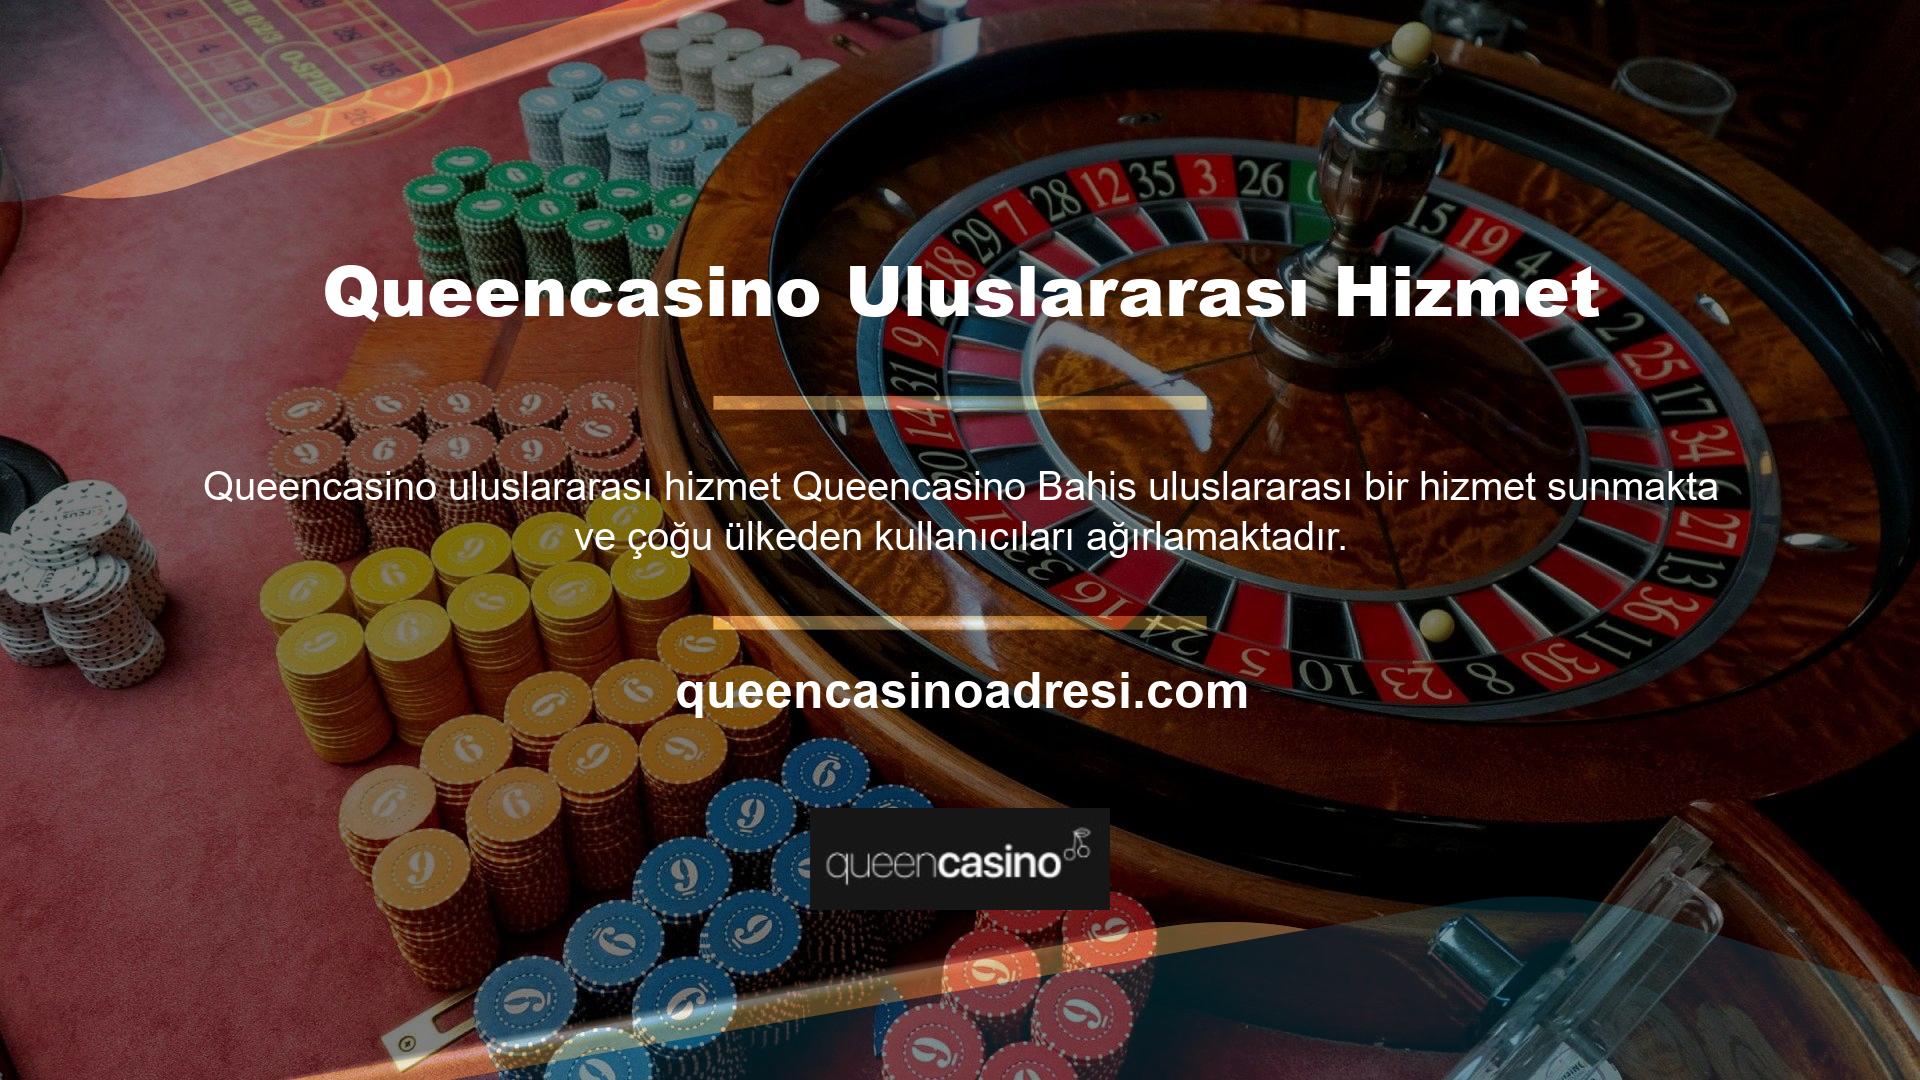 Şirket, şık bir temayla kullanıcıların dikkatini çeken çeşitli oyun seçenekleriyle gerçek bir casino dünyası yaratmıştır